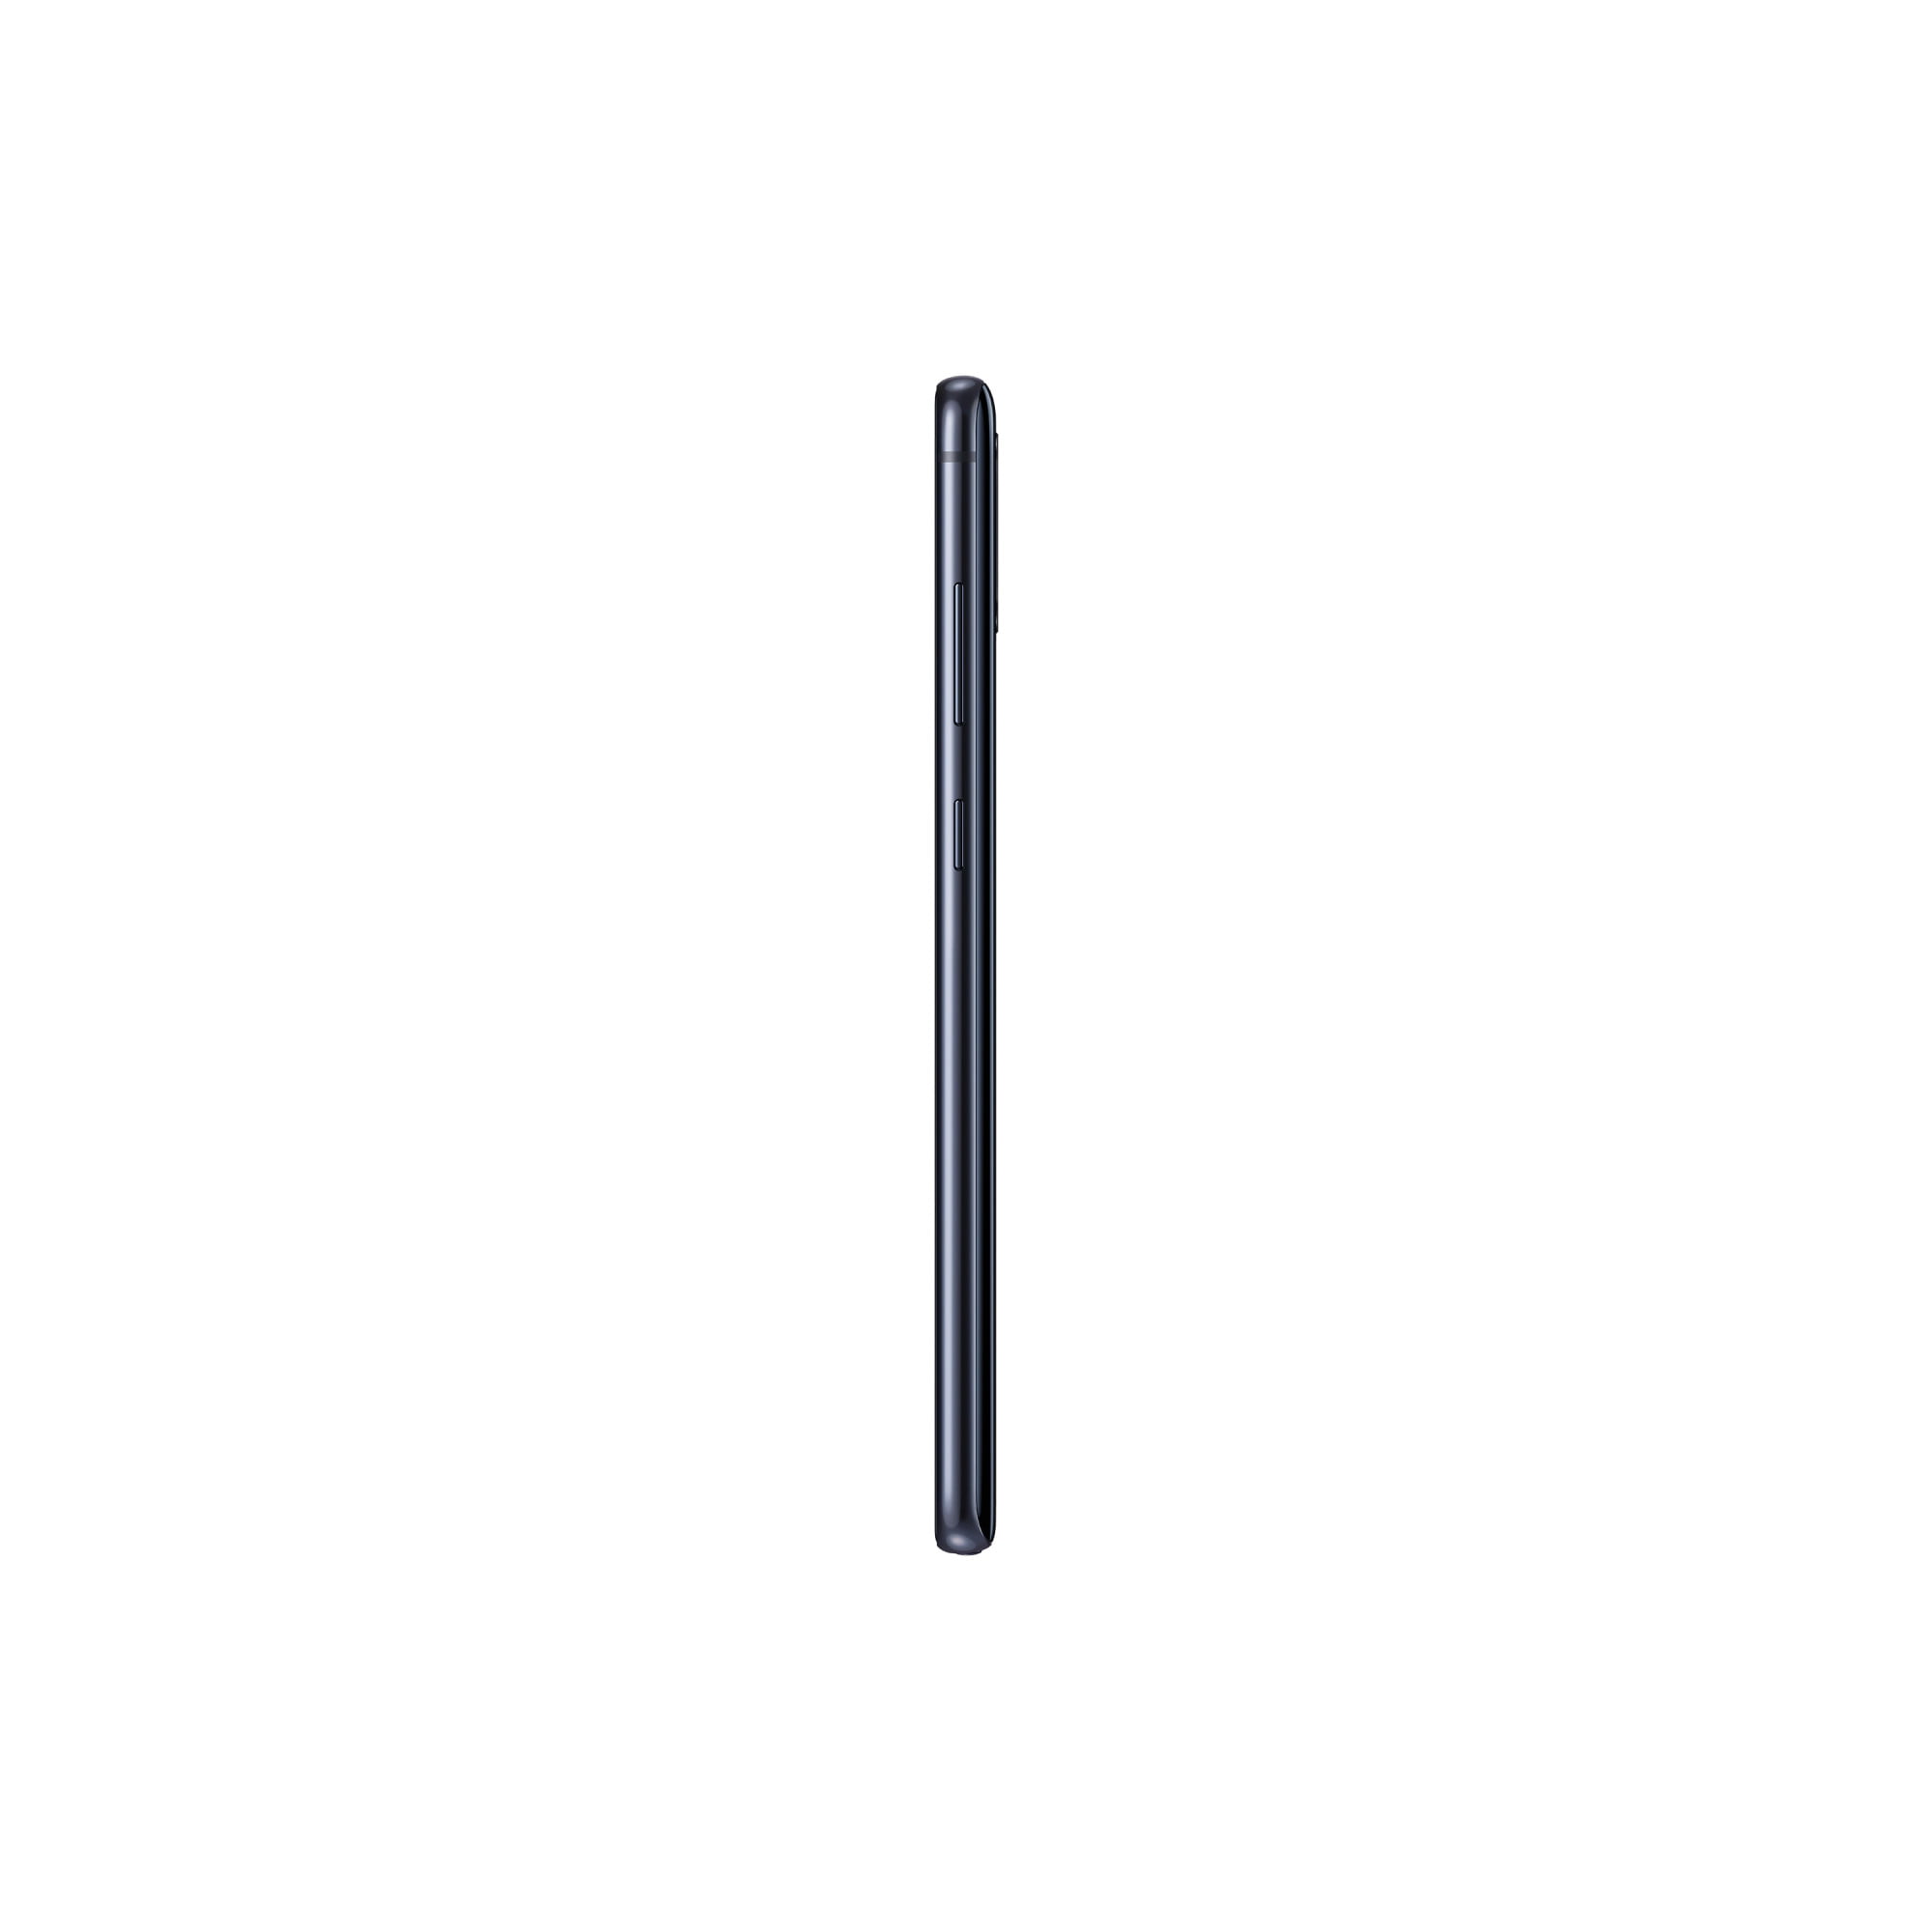 Samsung Galaxy Note10 Lite SM-N770F Dual-SIM 128GB SM-N770FDSBK